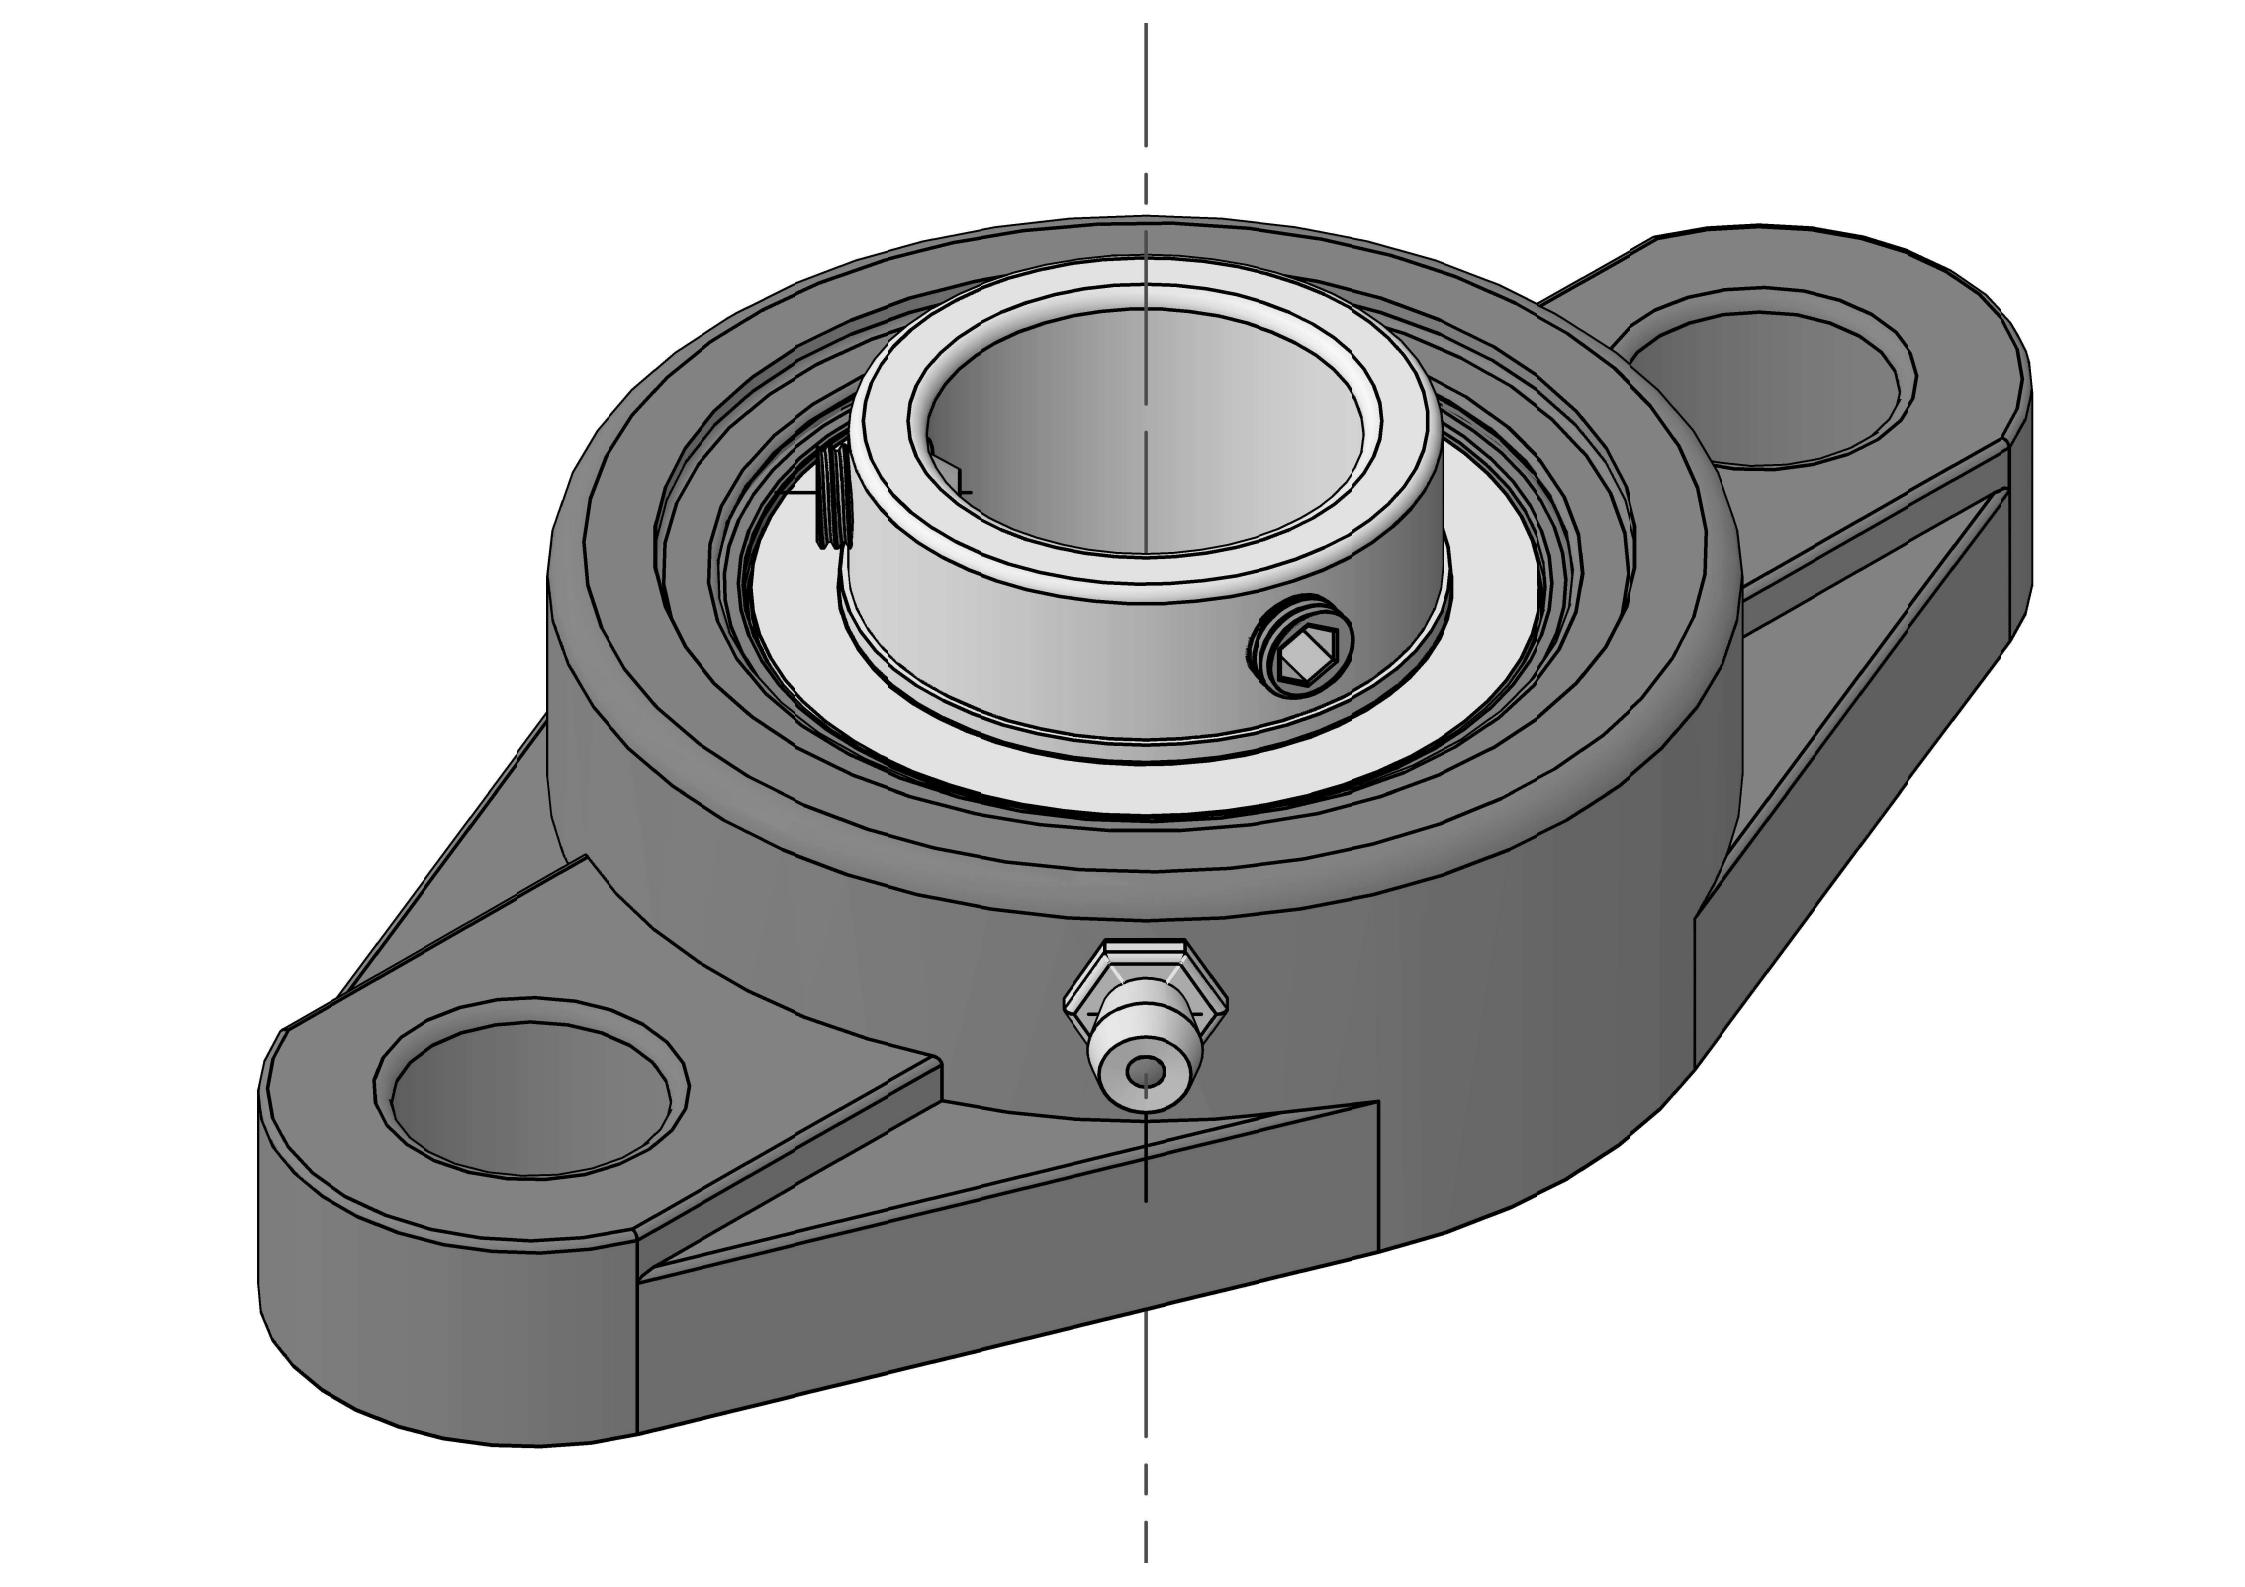 UCFL322 Ležajne jedinice s dva vijka i ovalnom prirubnicom s provrtom od 110 mm